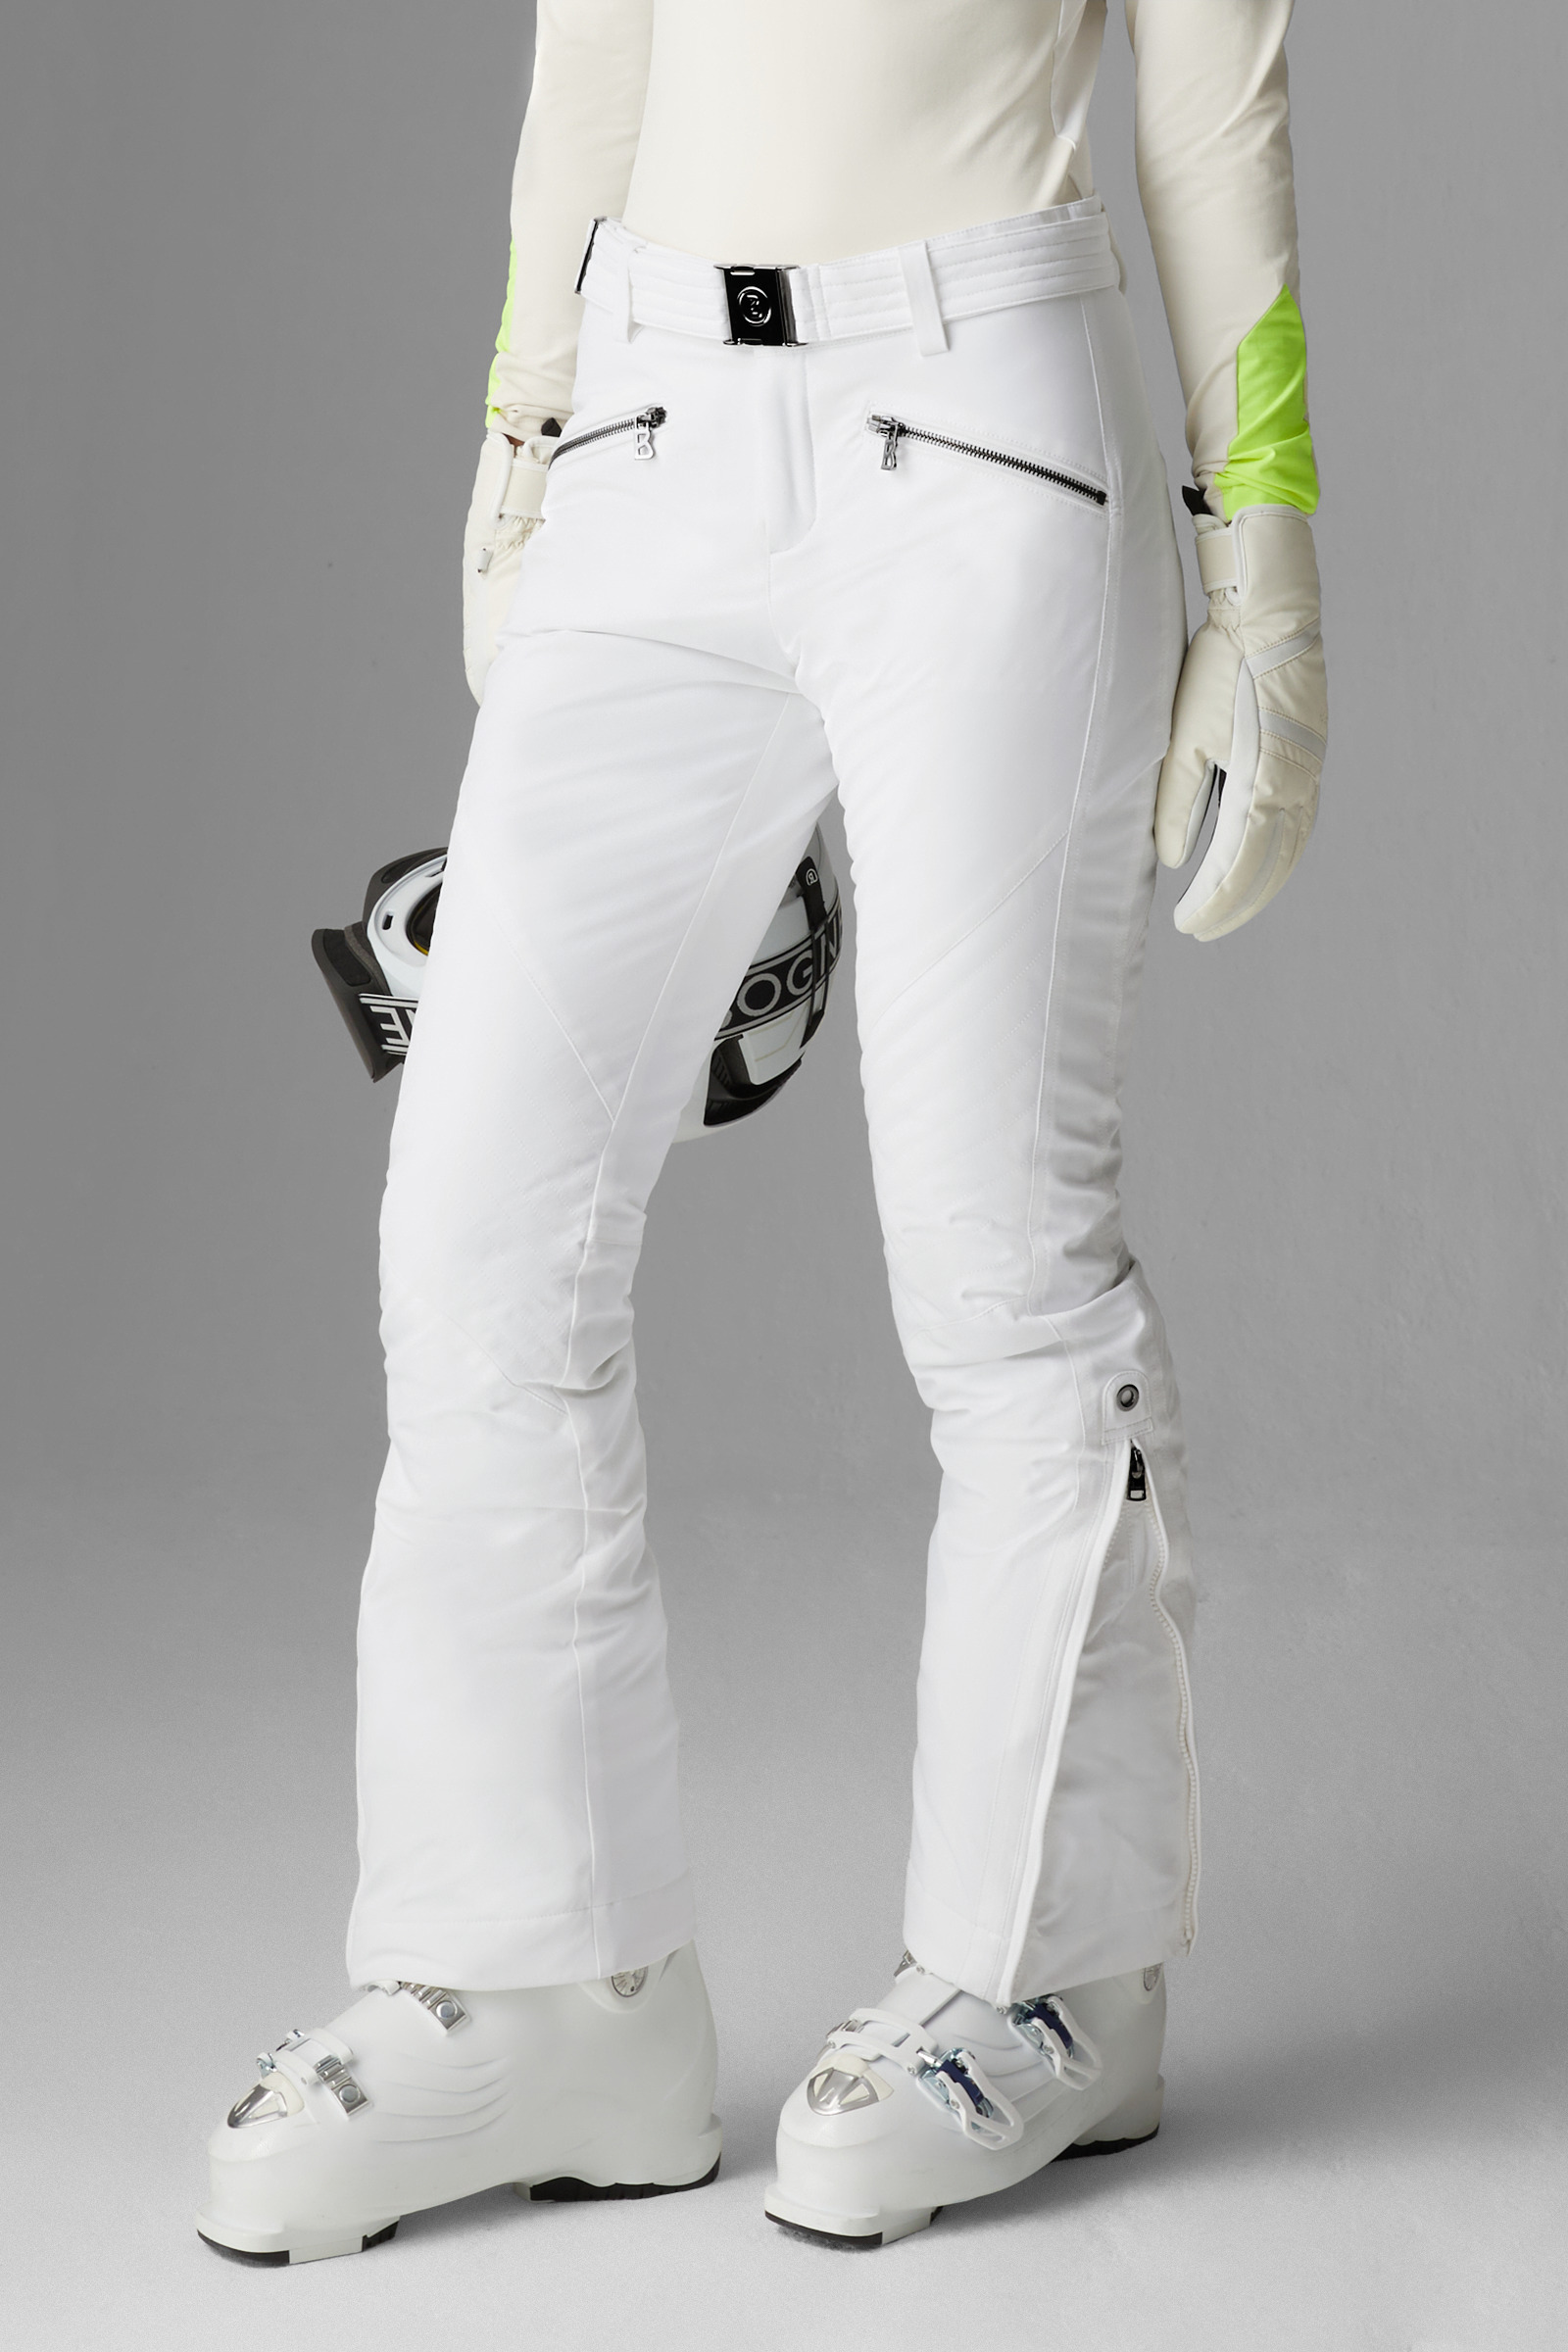 Bogner Franzi Ski Pants Women's - Size 34 US 4 XS - Off-White Black Print -  NEW